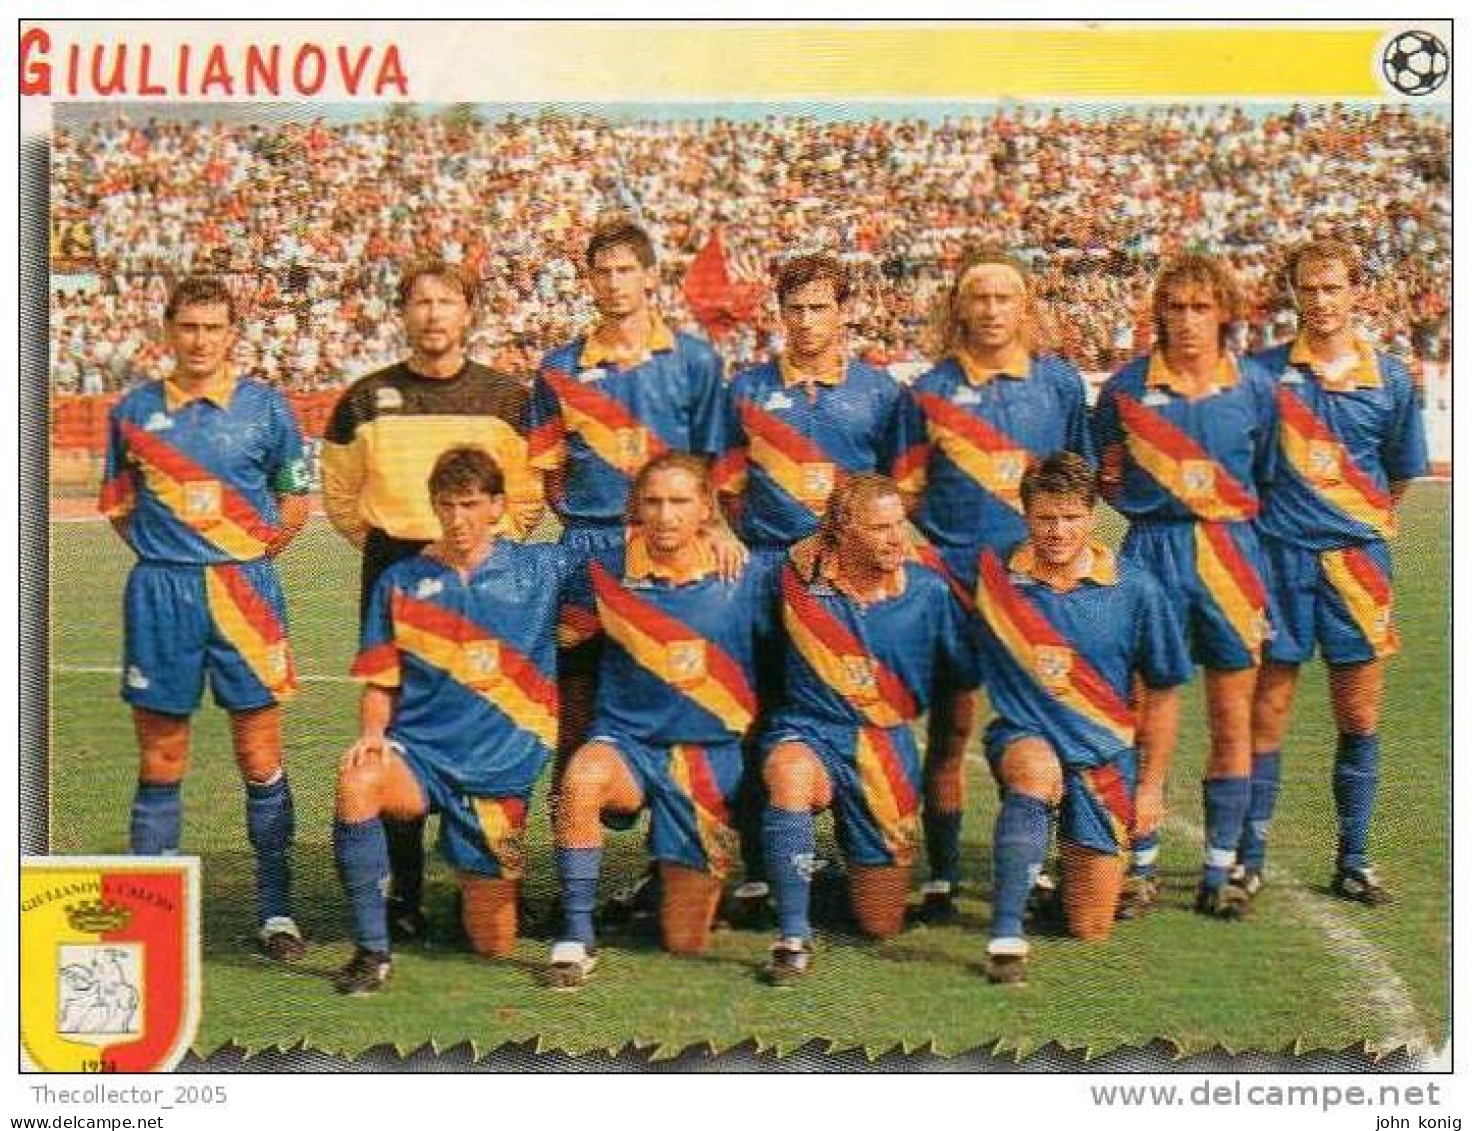 CALCIATORI - Calcio - Figurine Panini-calciatori 1997-98-n. #638 GIULIANOVA - Edizione Italiana